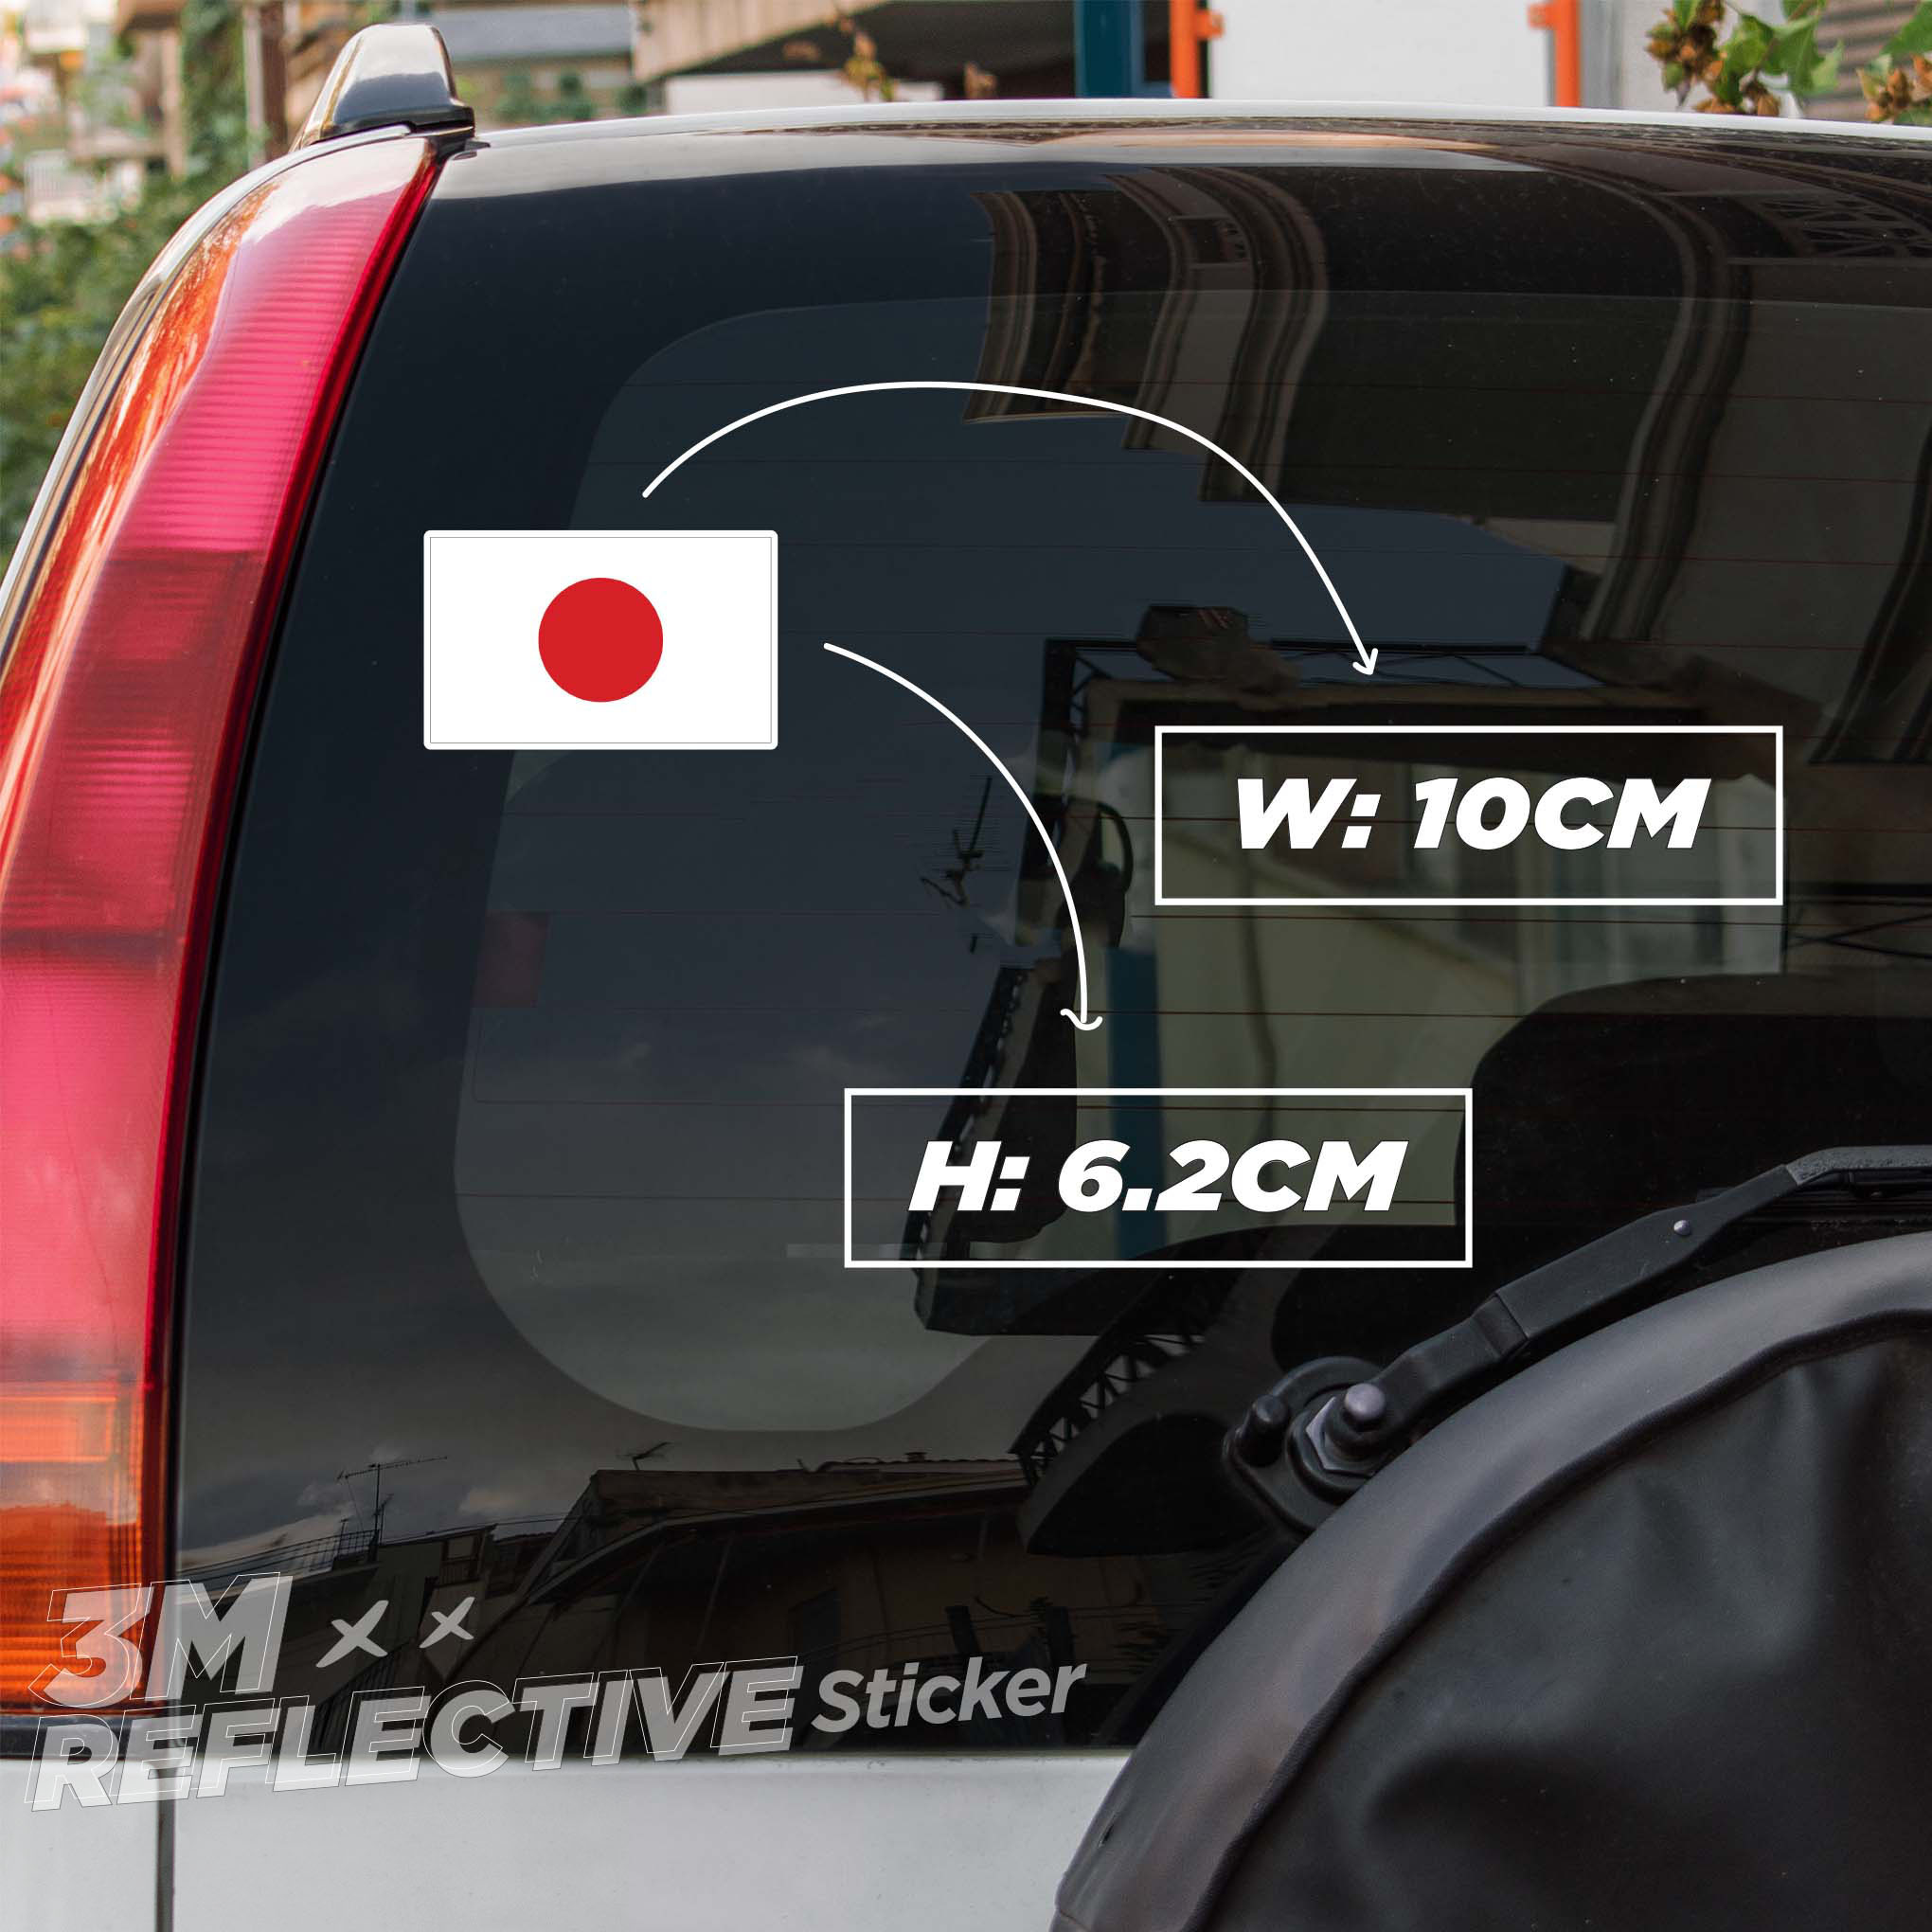 Hình ảnh JAPAN FLAG 3M - Reflective Sticker Die-cut Hình dán phản quang thương hiệu STICKER FACTORY